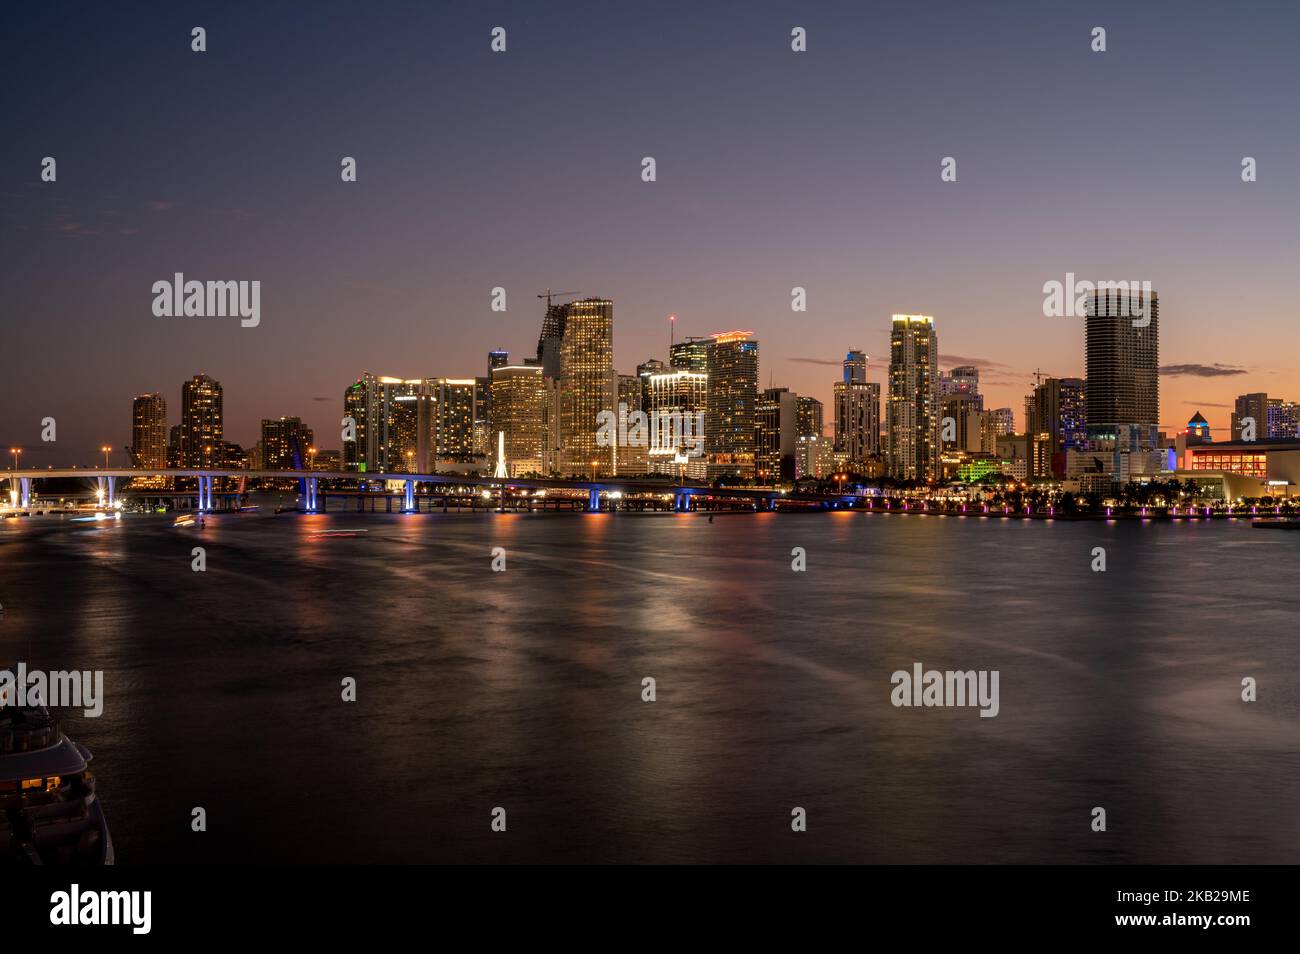 Paysage urbain de Miami Golden hour - nuit / coucher de soleil - Biscayne Bay Banque D'Images